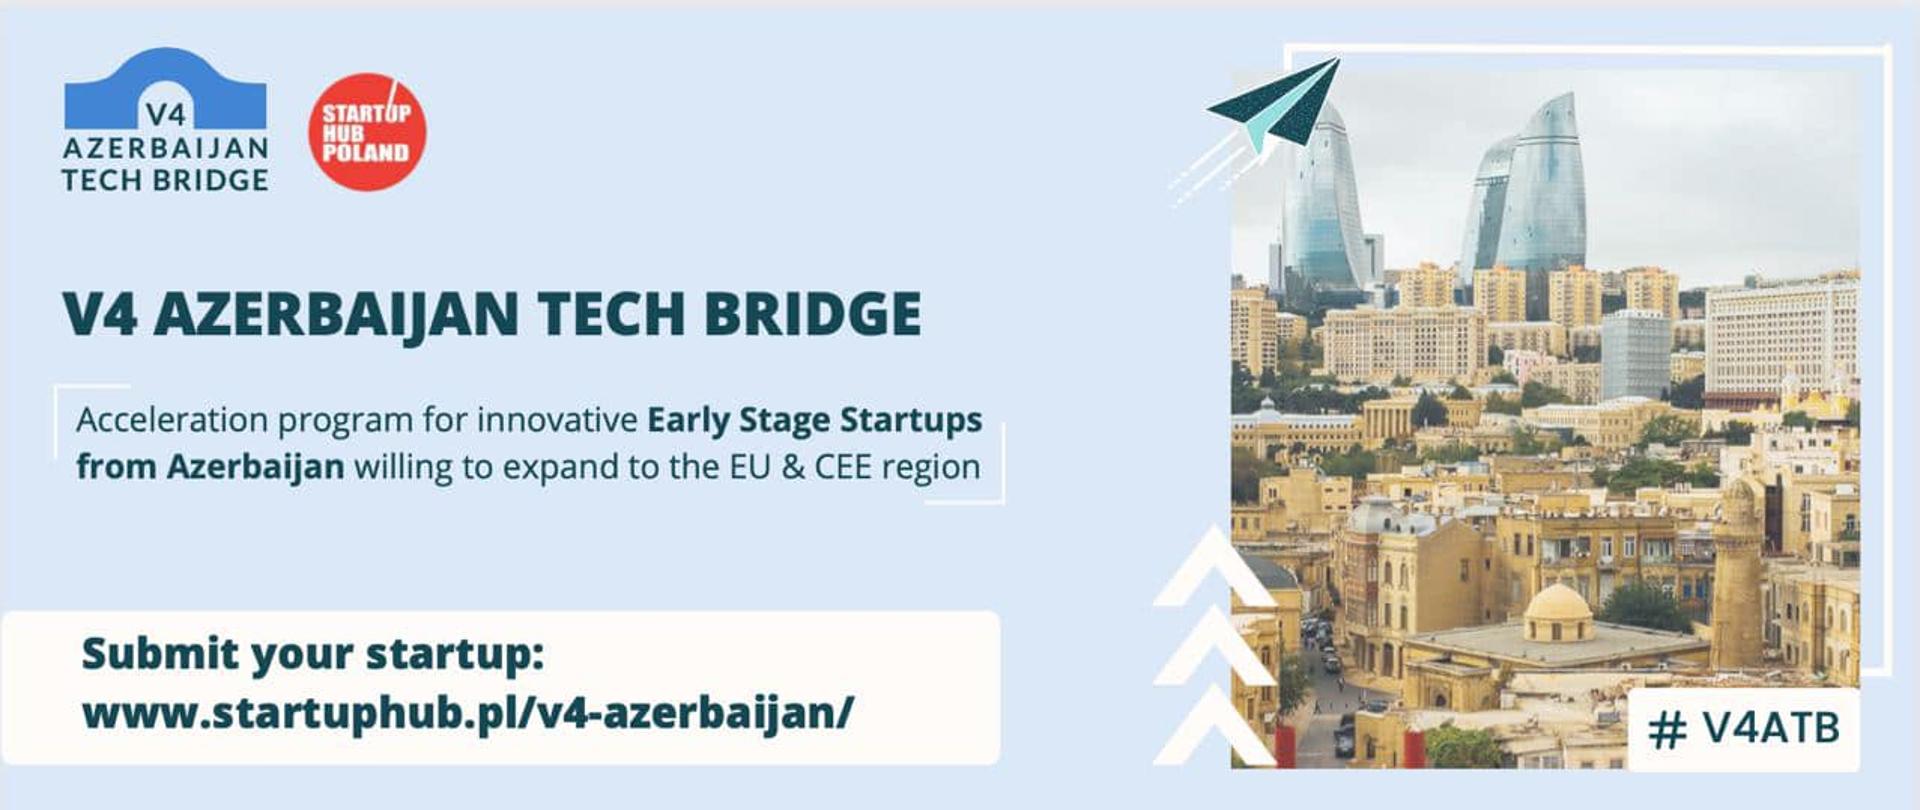 V4 Azerbaijan Tech Bridge